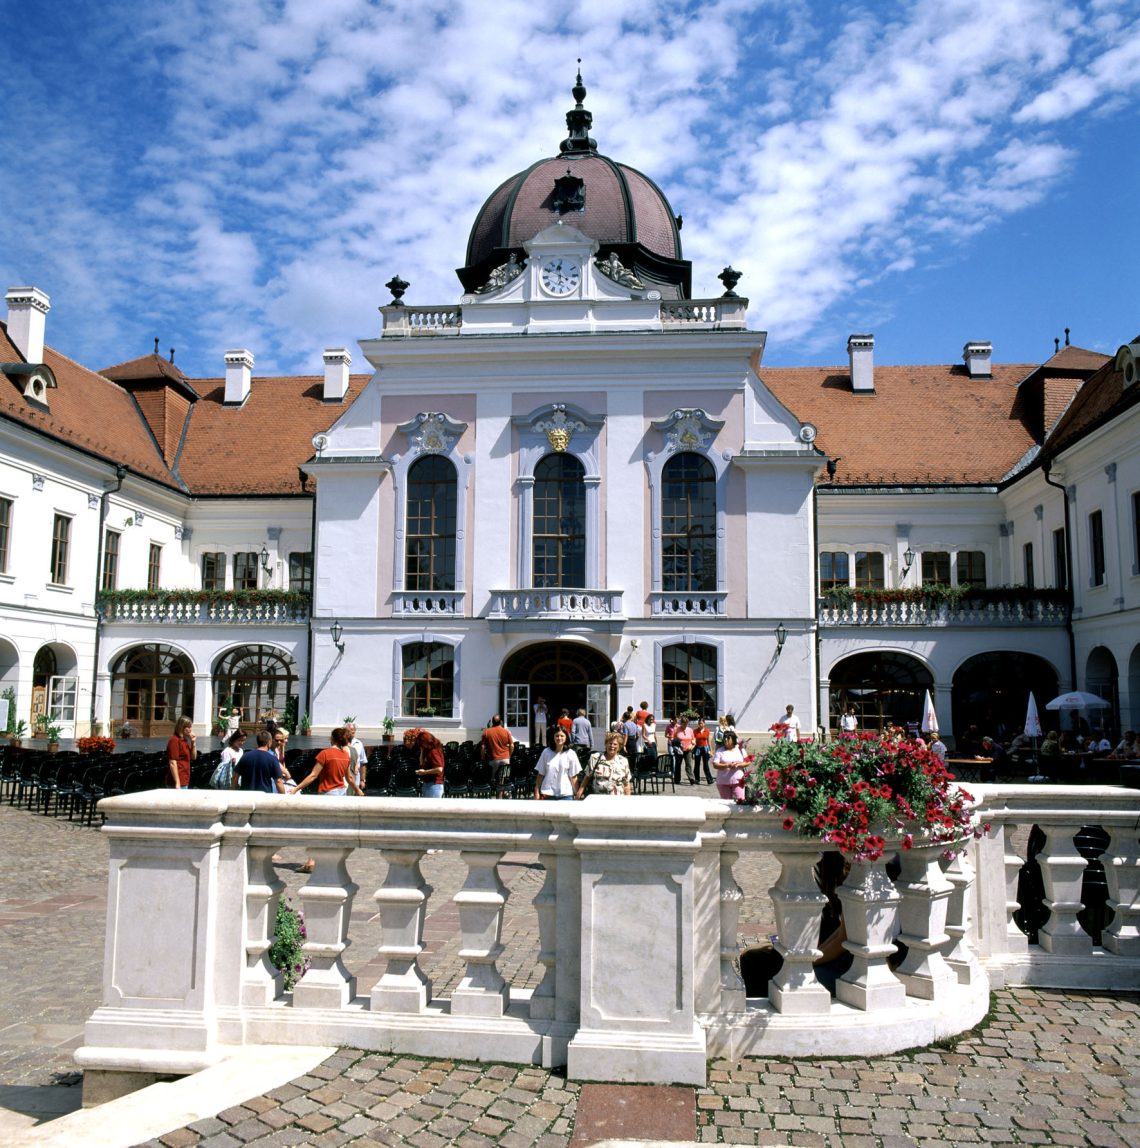 Gödöllö Königliches Schloss © Ungarisches Tourismusamt